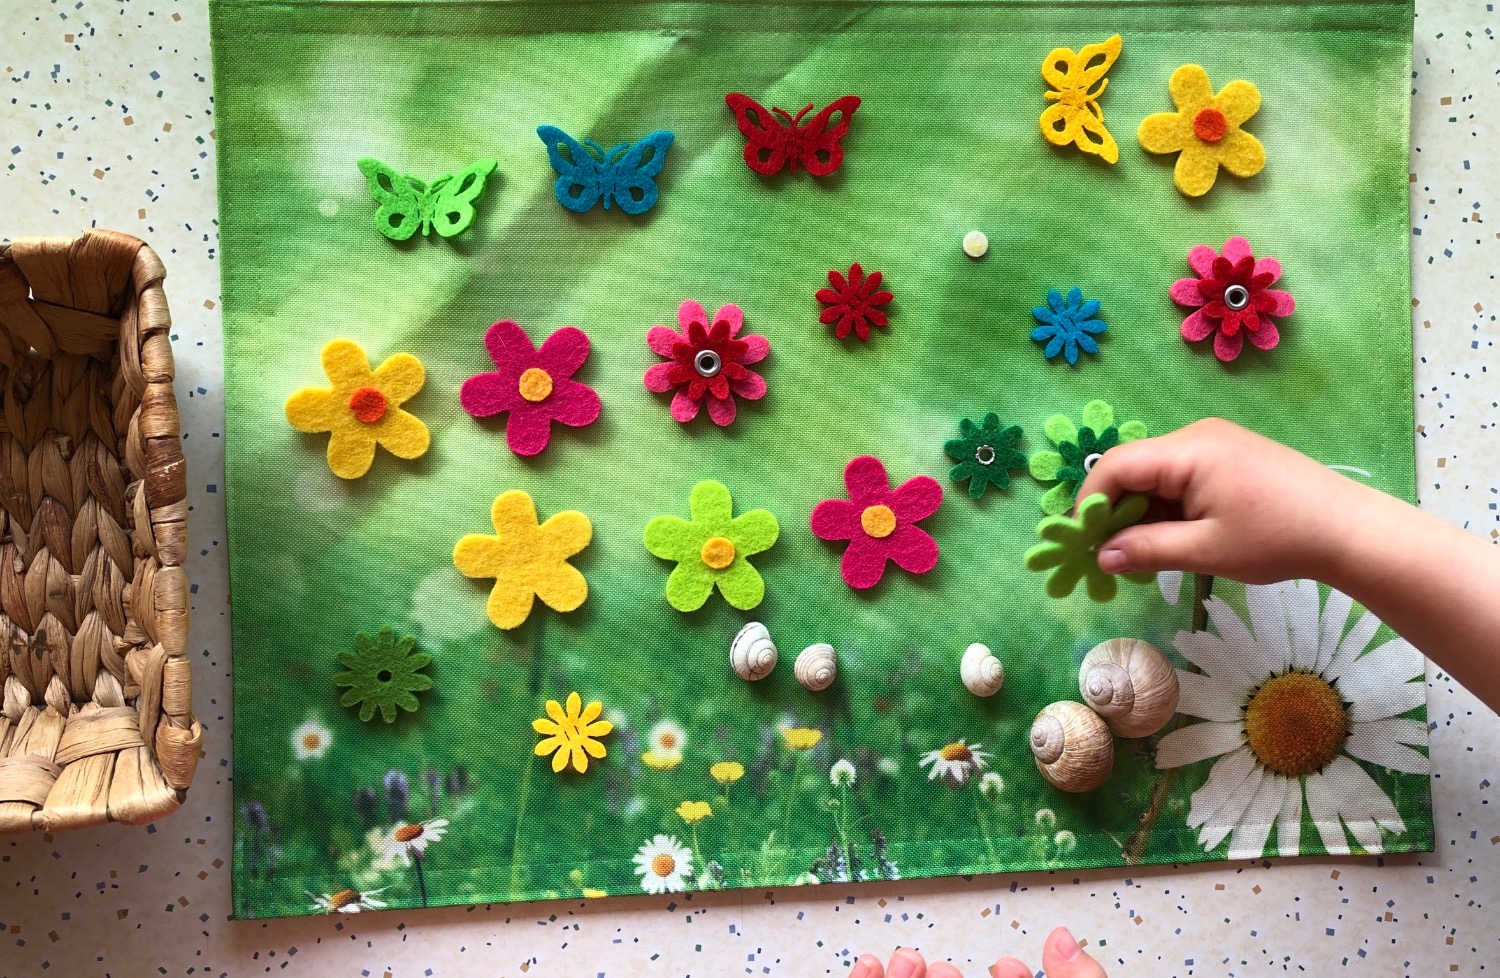 Titelbild zur Idee für die Beschäftigung mit Kindern '(57) Blumenwiese legen'